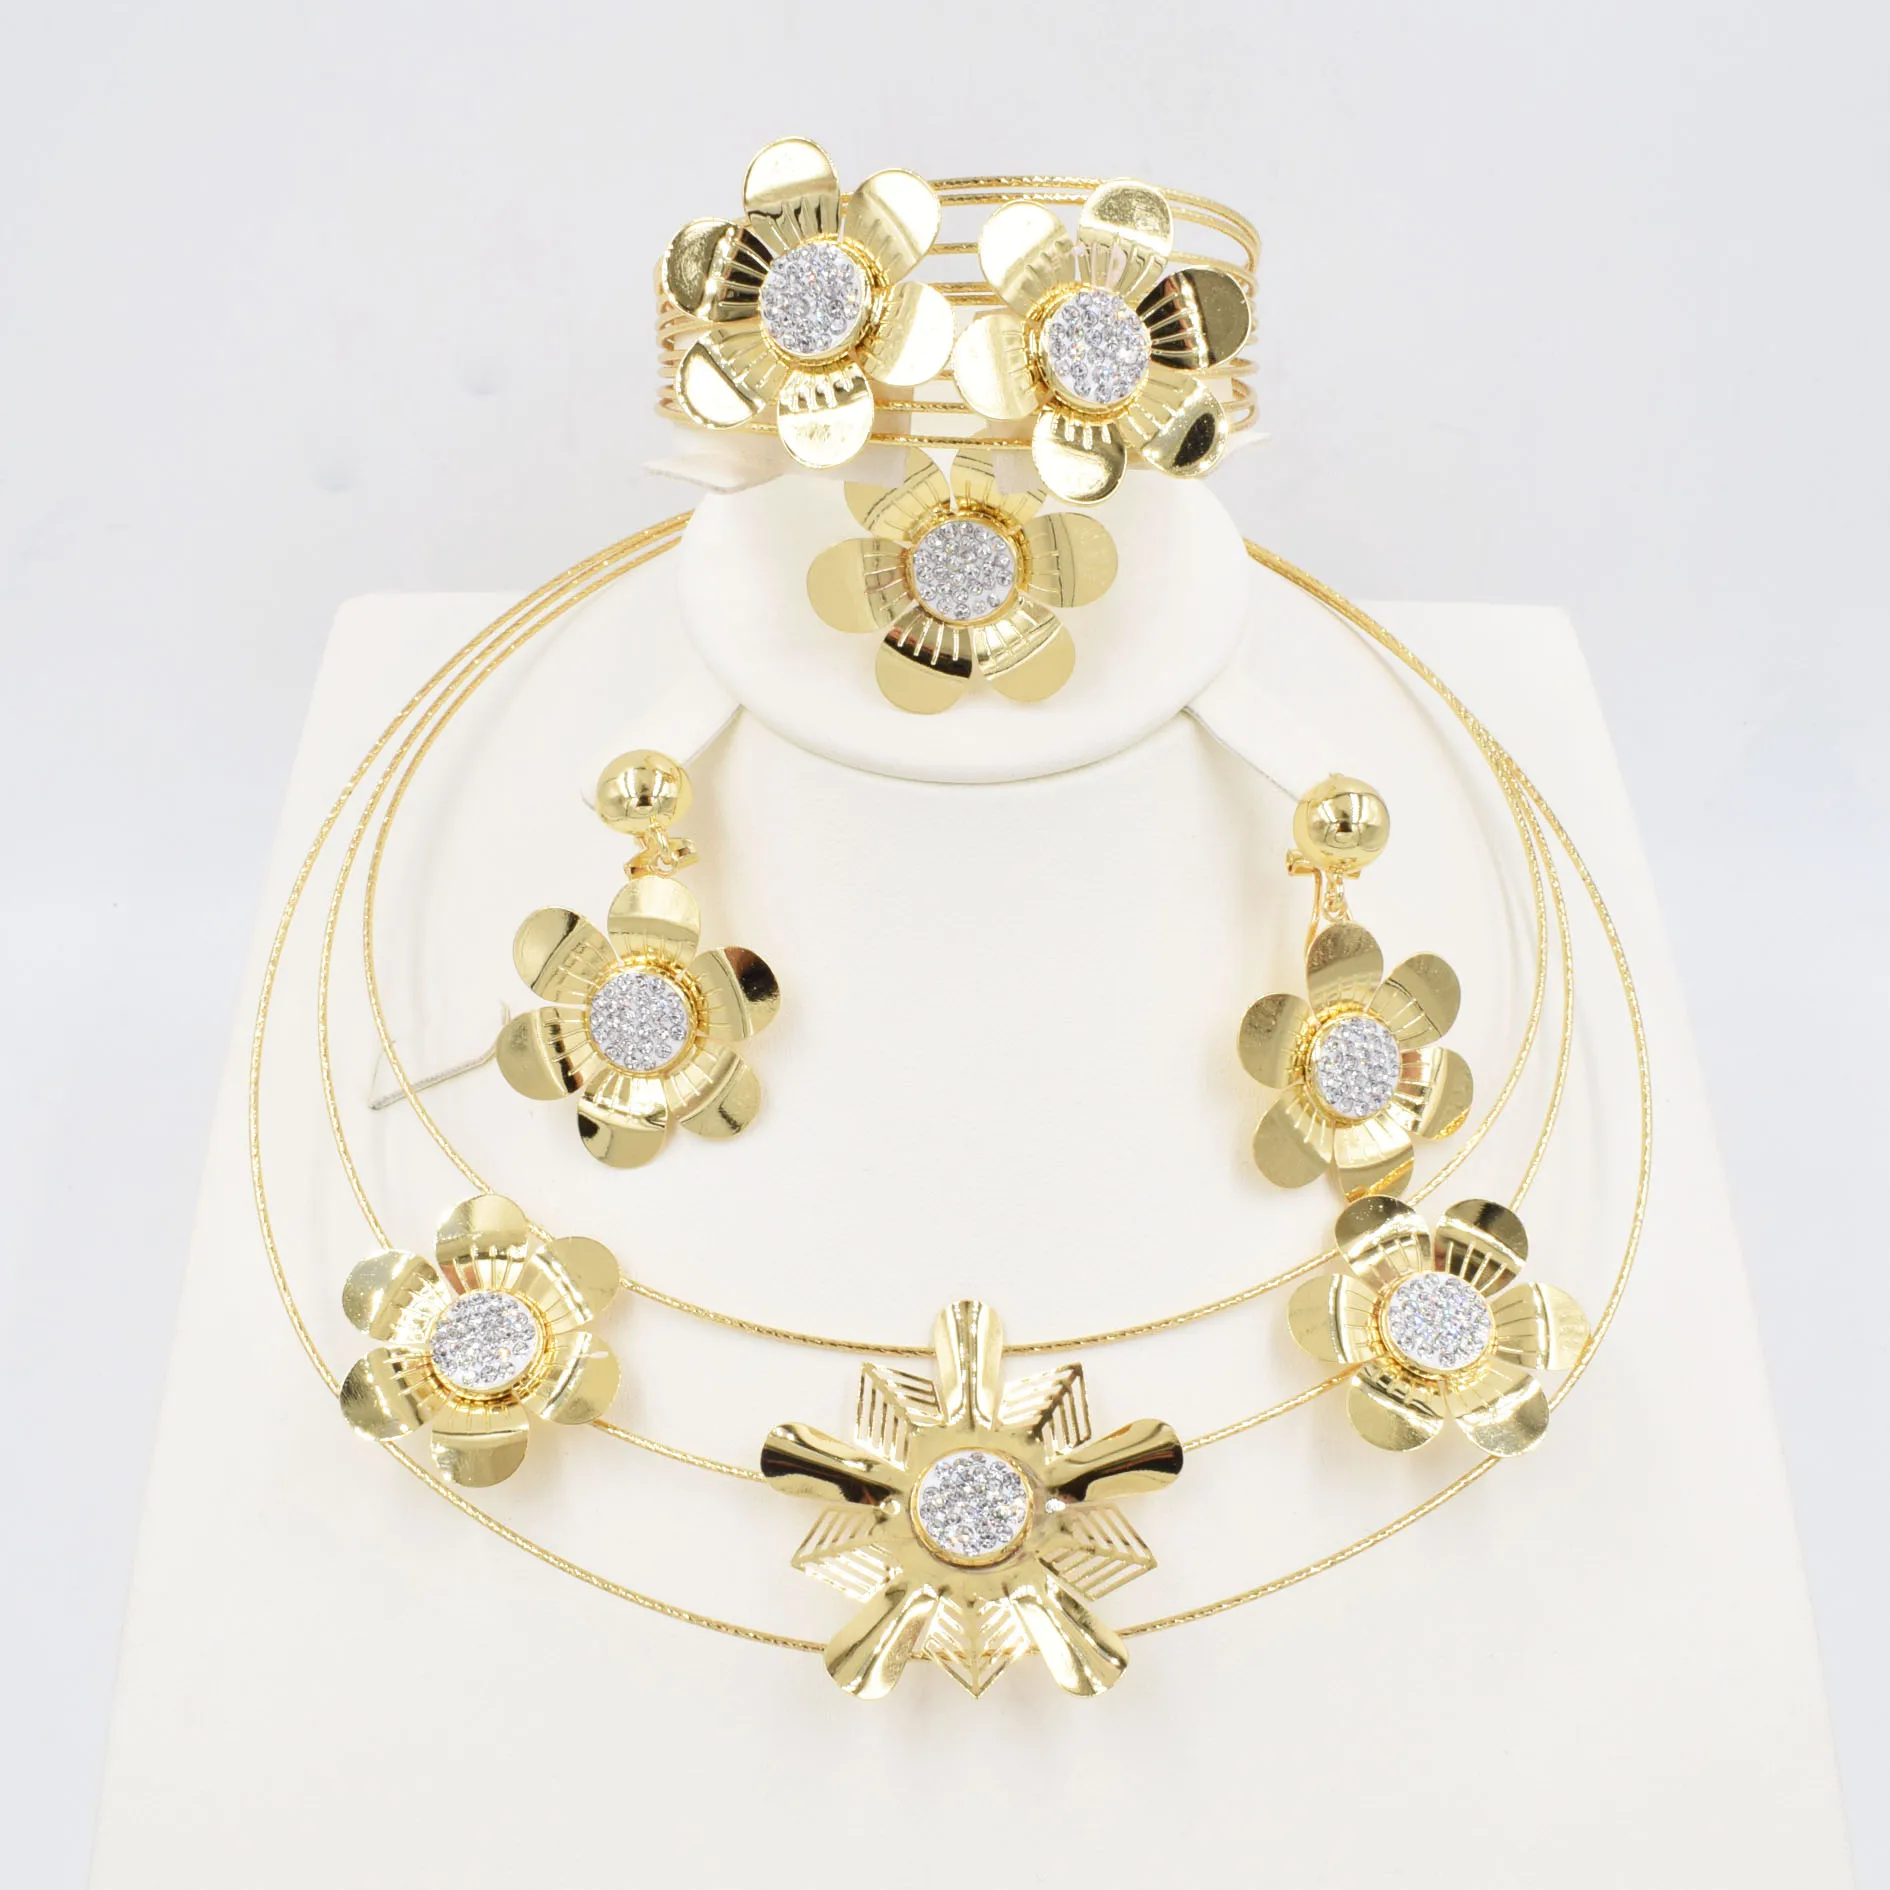 NEUE Hohe Qualität Ltaly 750 Gold farbe Schmuck Set Für Frauen afrikanische perlen jewlery mode halskette set ohrring schmuck